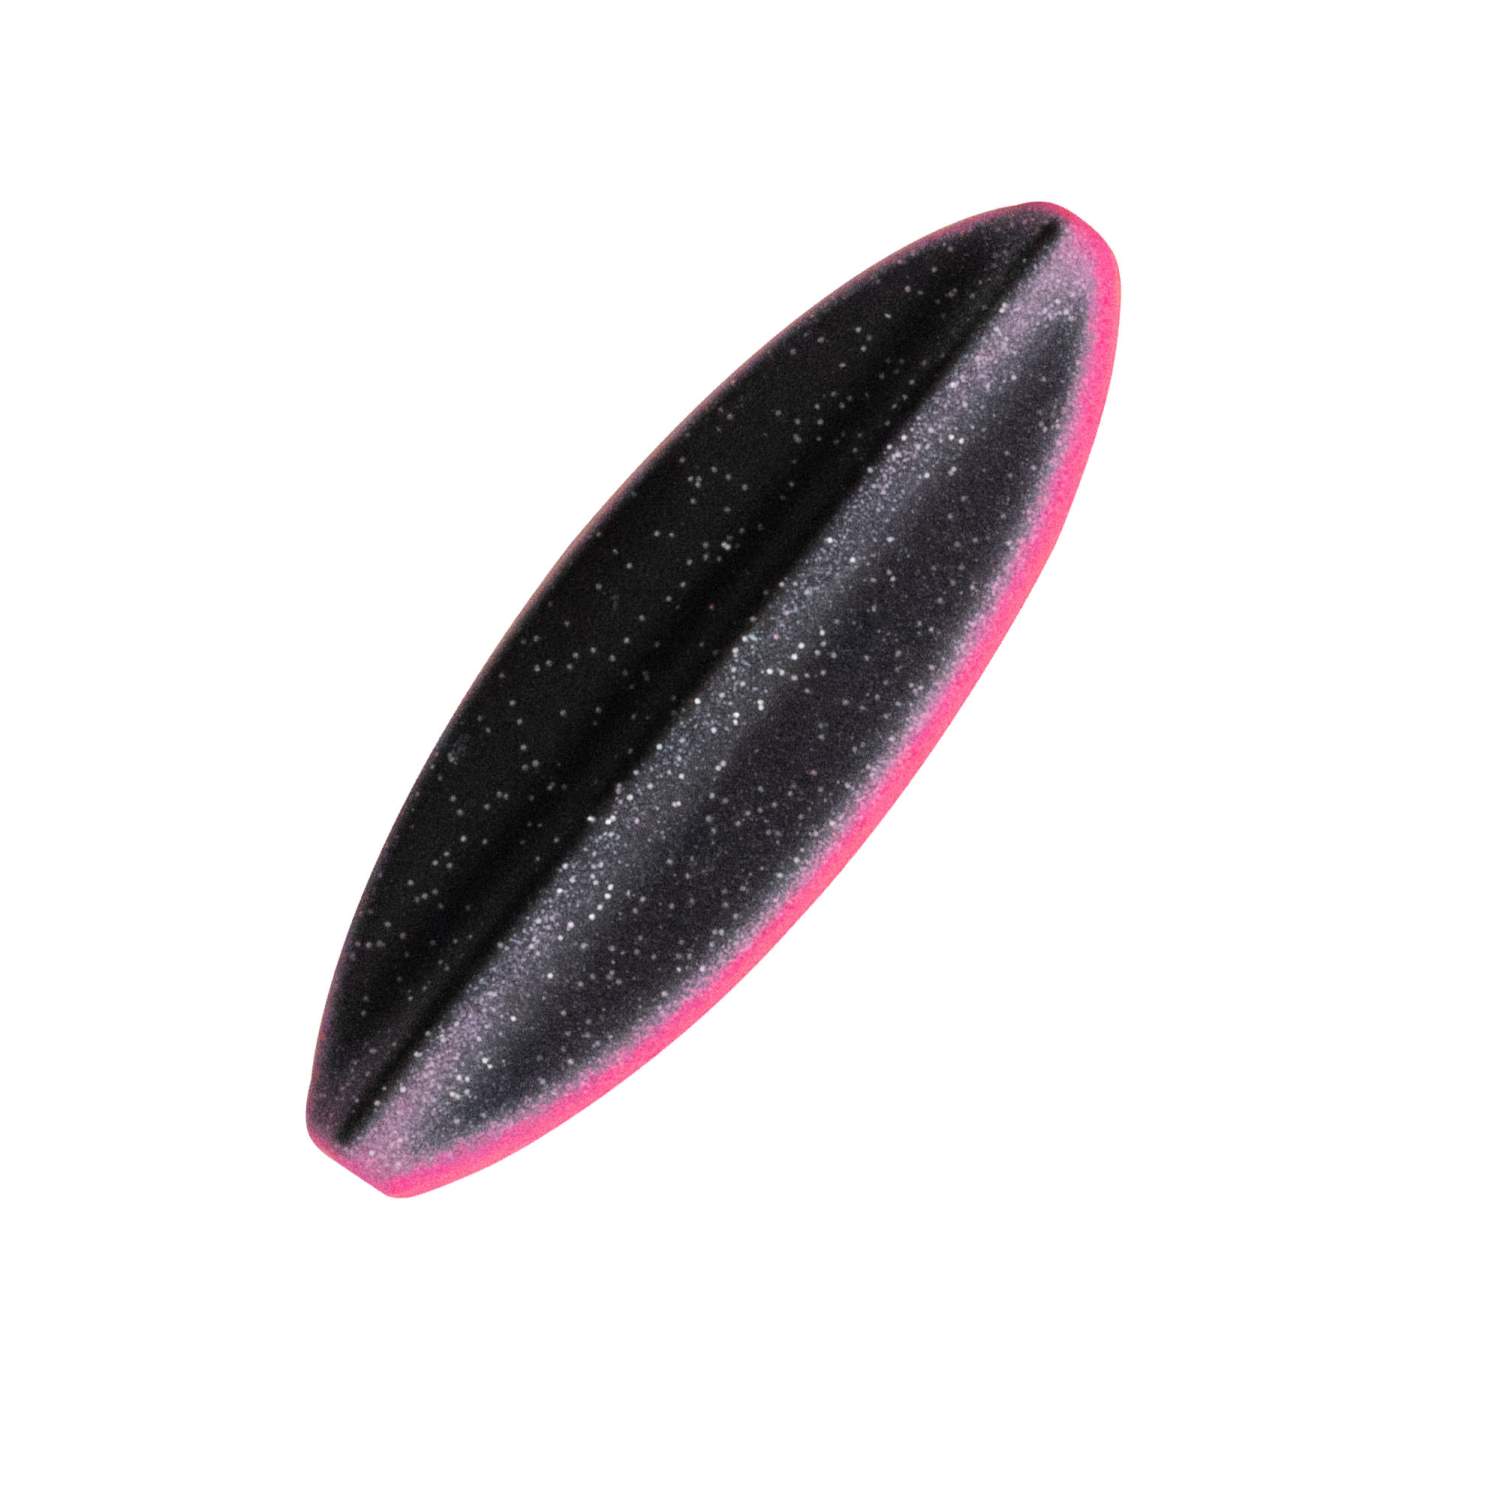 Troutlook - Hurricane - Inline Spoon - 5cm - 5gr - Black/Pink UV